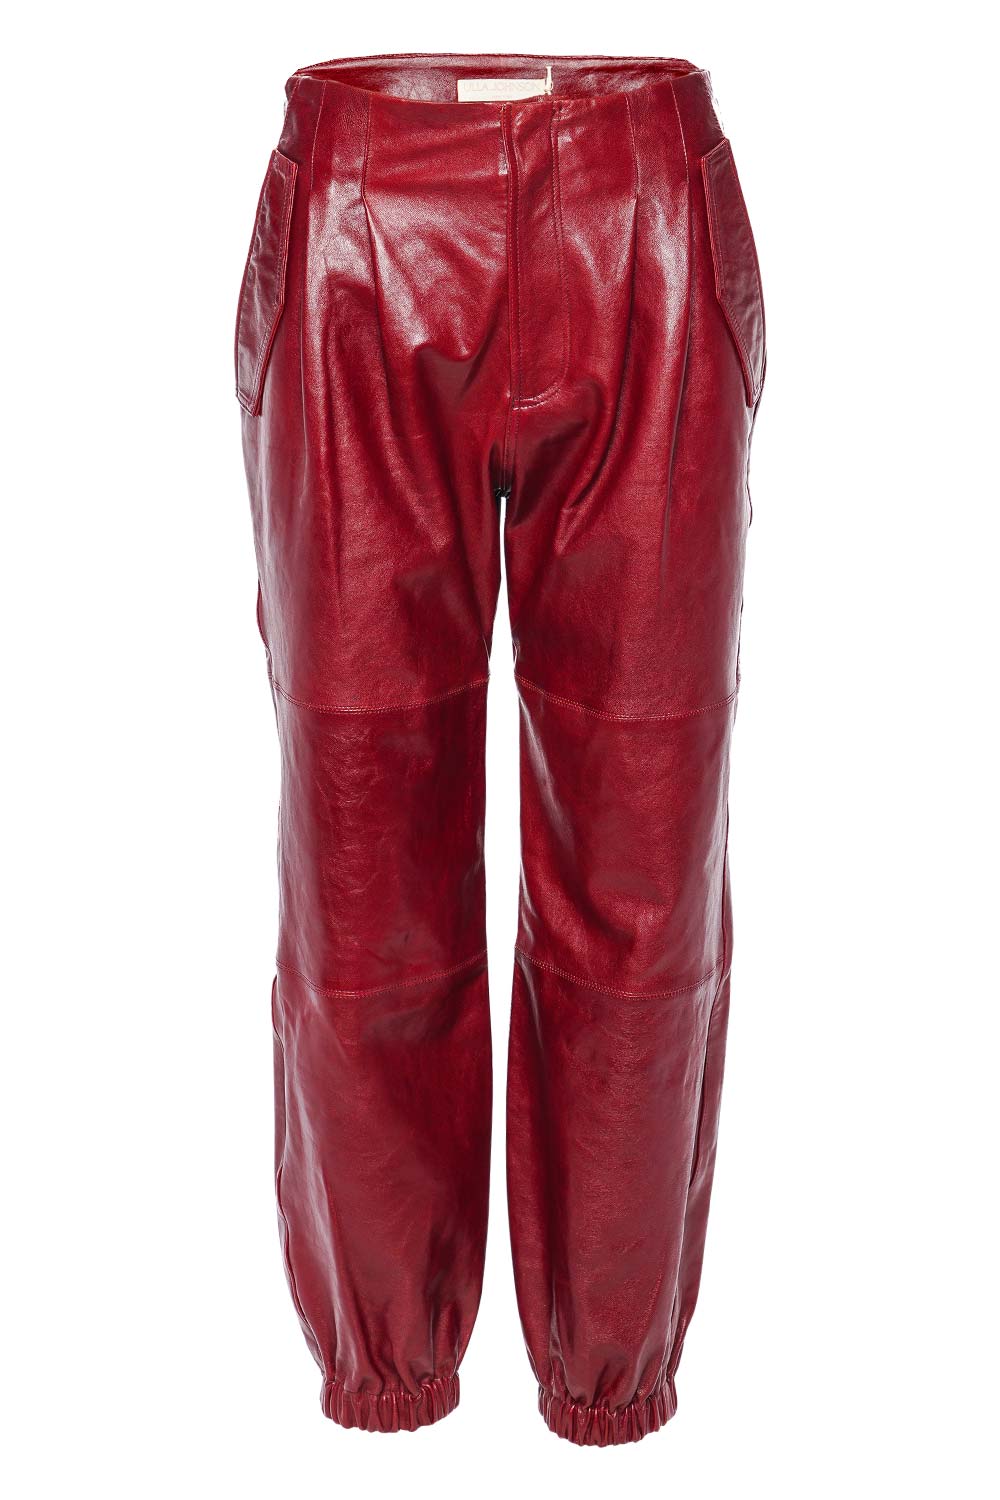 Ulla Johnson Cyrus Mahogany Leather Jogger Pants